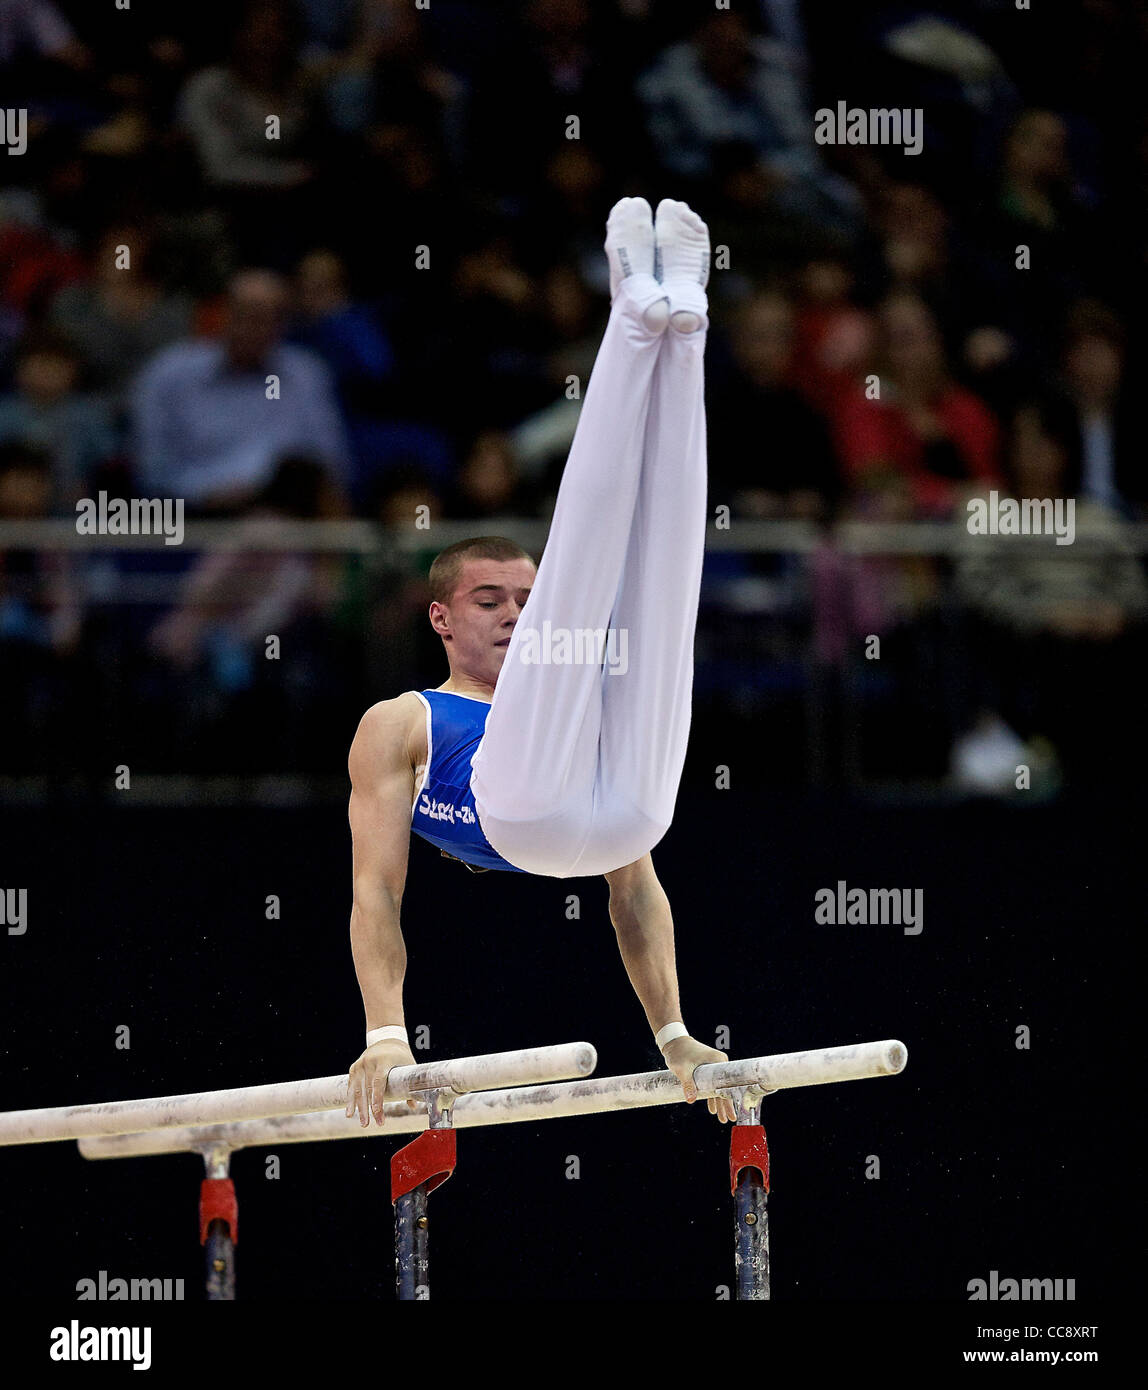 Oleg VERNIAIEV (UKR), en concurrence dans les barres parallèles, le Londres prépare Visa International, Test Event olympique de gymnastique Banque D'Images